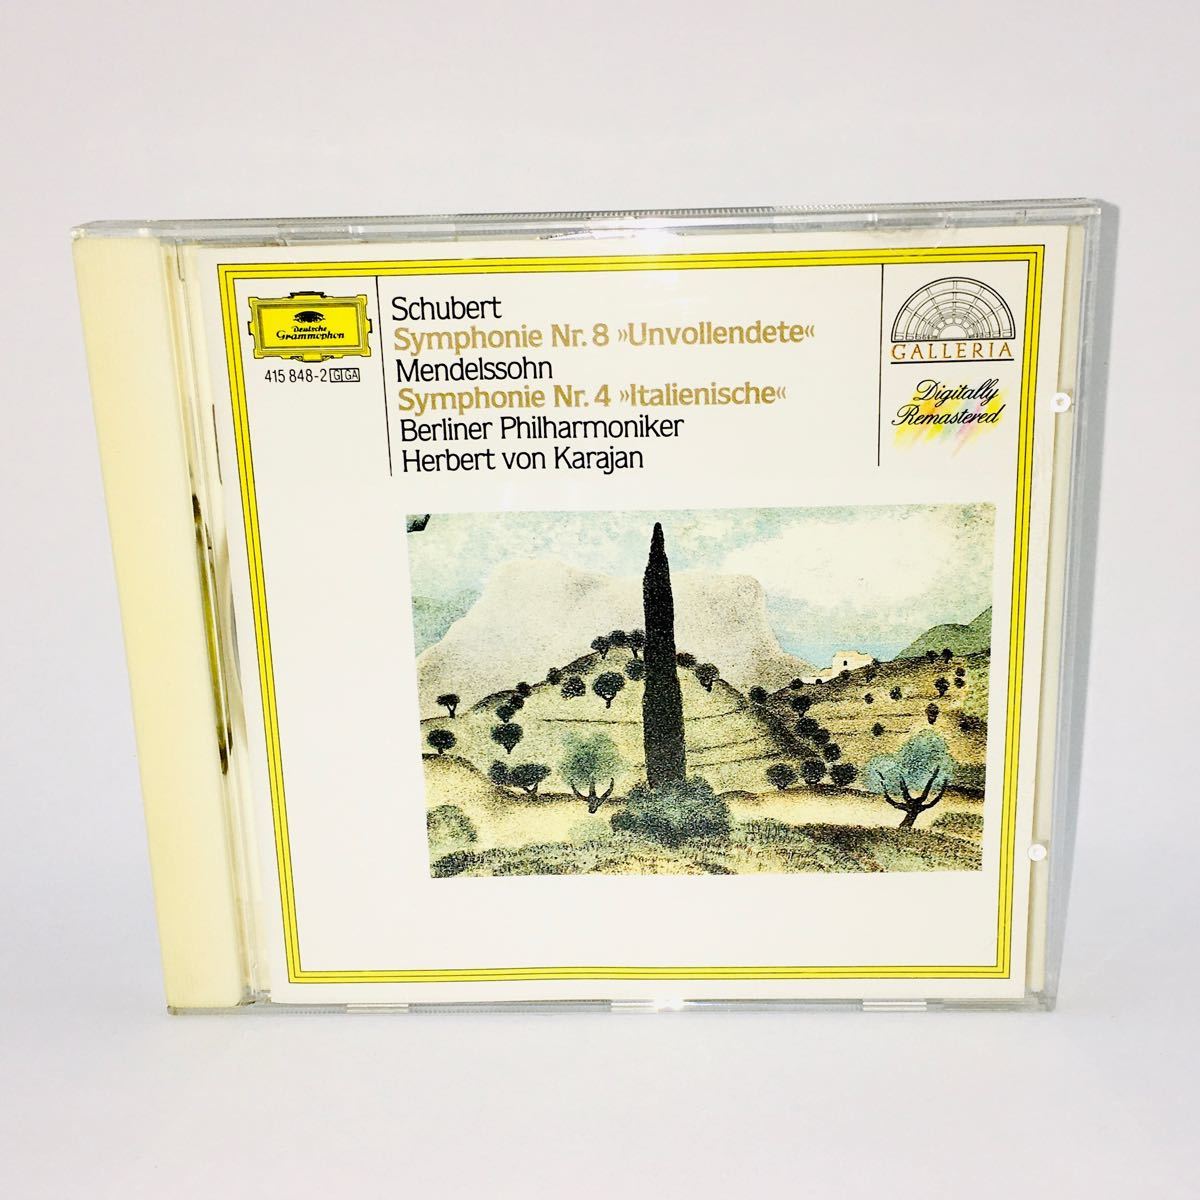 ヘルベルト・フォン・カラヤン Herbert von Karajan フランツ・シューベルト Franz Schubert CD